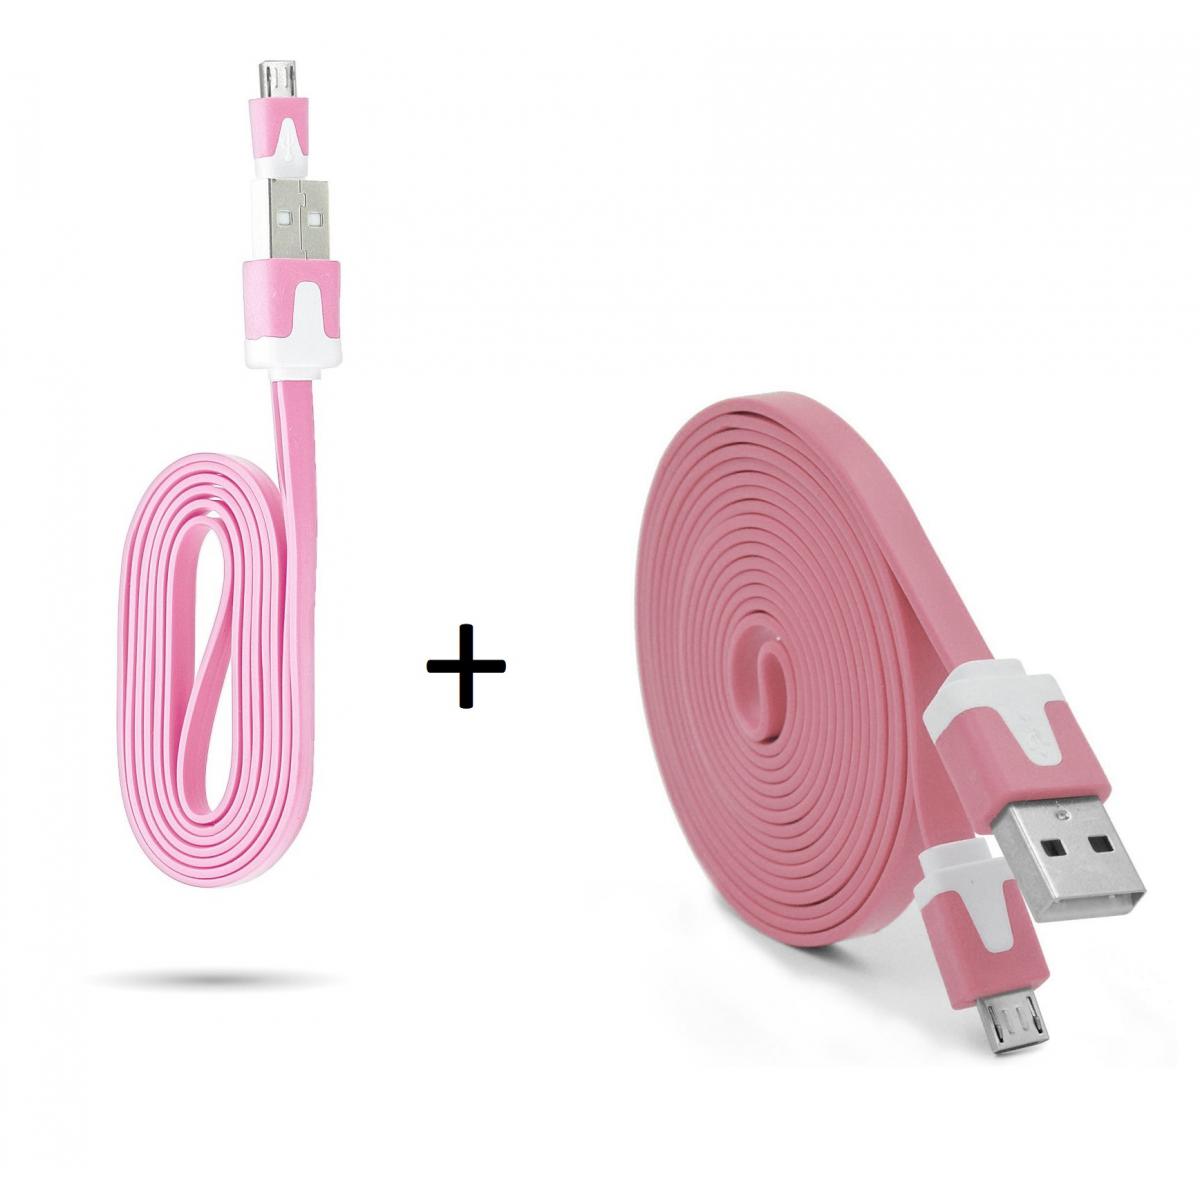 Shot - Pack Chargeur pour WIKO Y80 Smartphone Micro USB (Cable Noodle 3m + Cable Noodle 1m) Android (ROSE) - Chargeur secteur téléphone